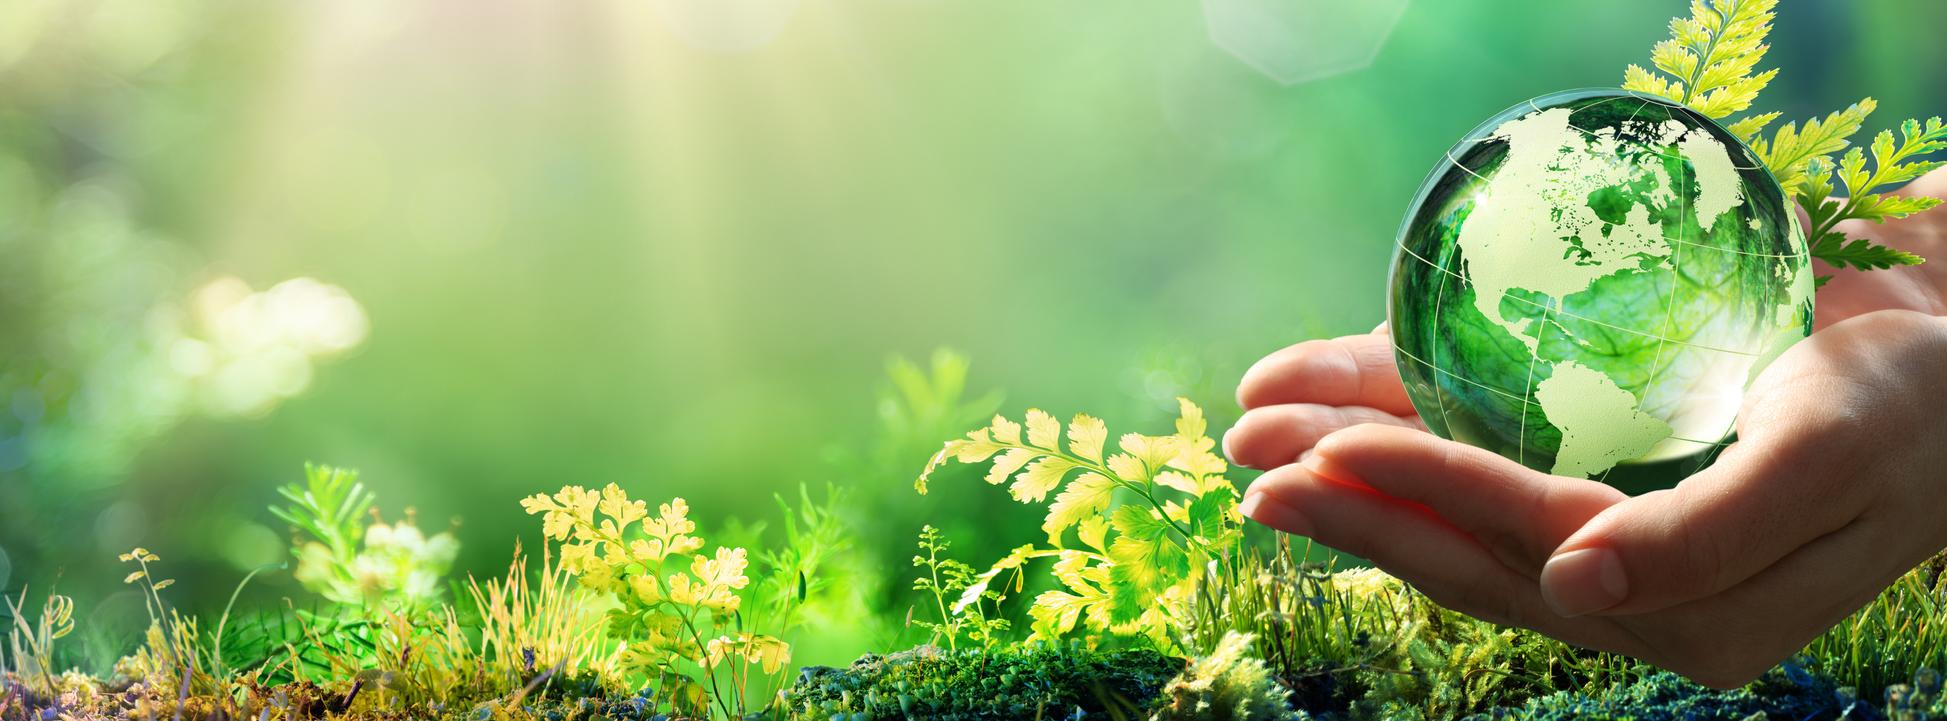 Foto de stock de Mãos segurando um globo de vidro verde floresta - conceito de meio ambiente